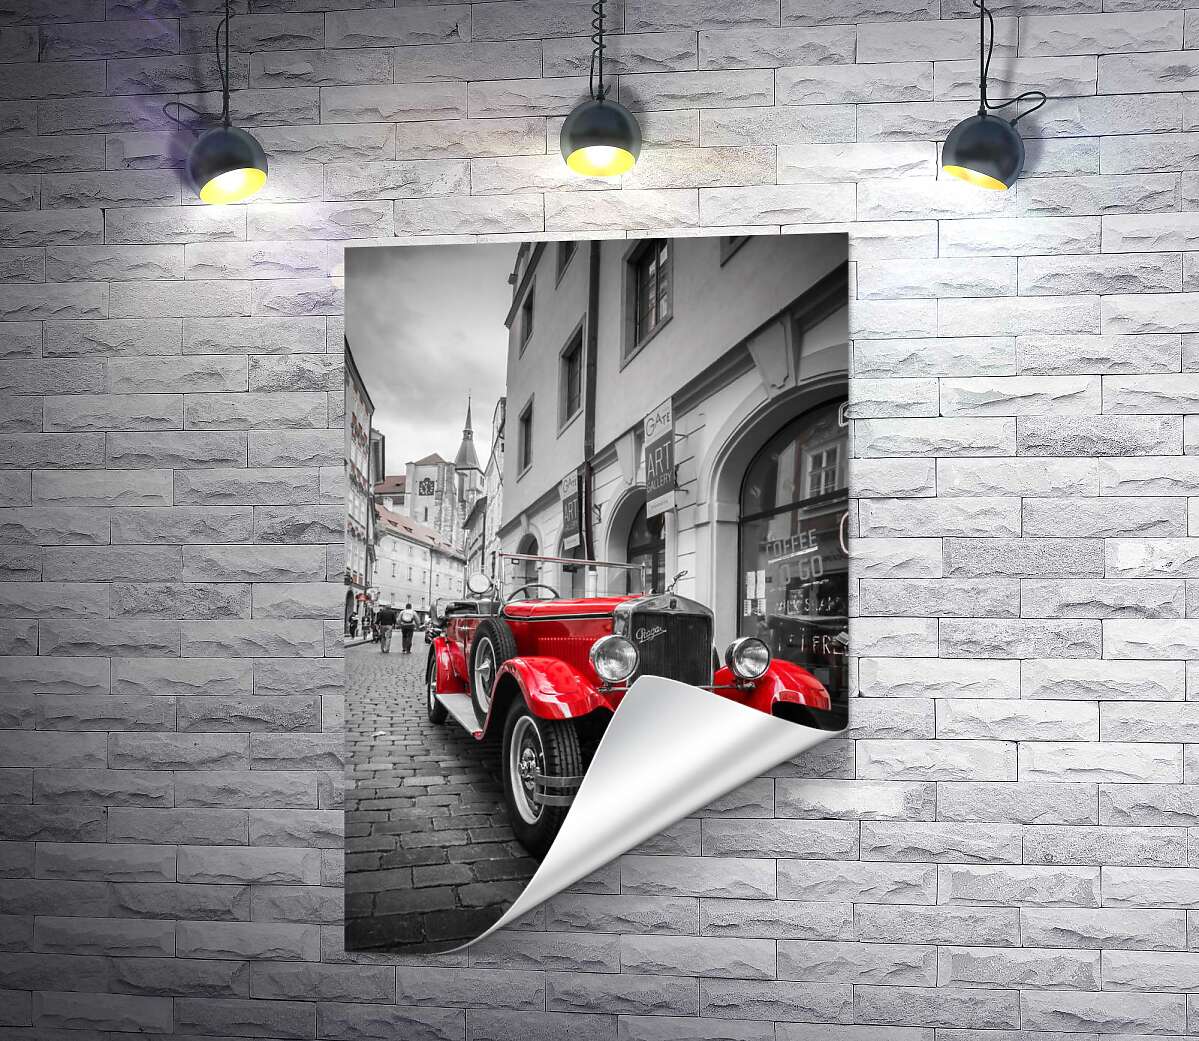 друк Червона яскравість ретро-автомобіля Praga Alfa на вулицях Праги